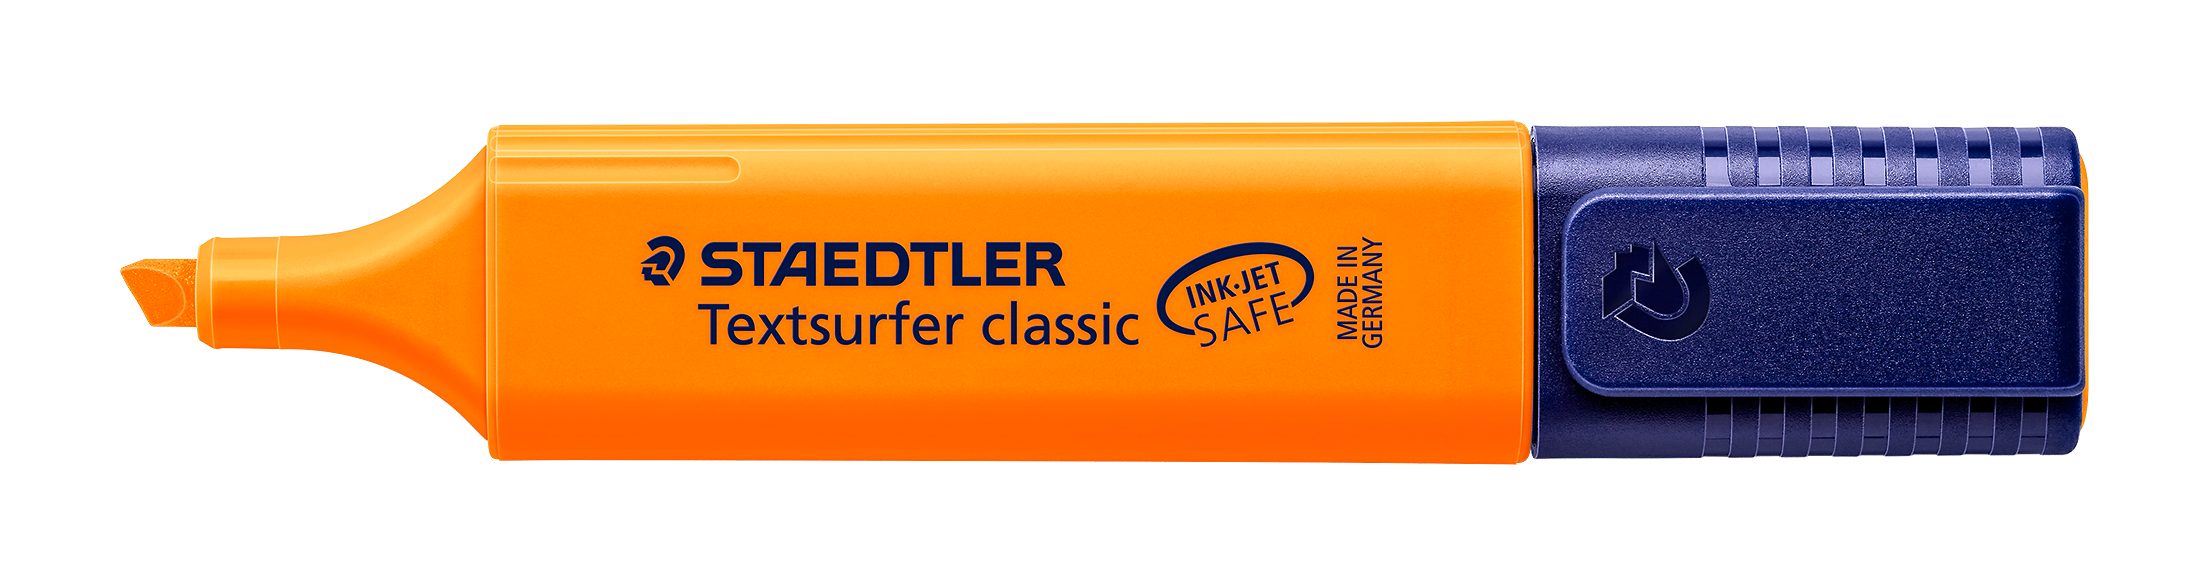 classic STAEDTLER Leuchtstift, Textsurfer JET SAFE 364-4 INK Marker Staedtler orange